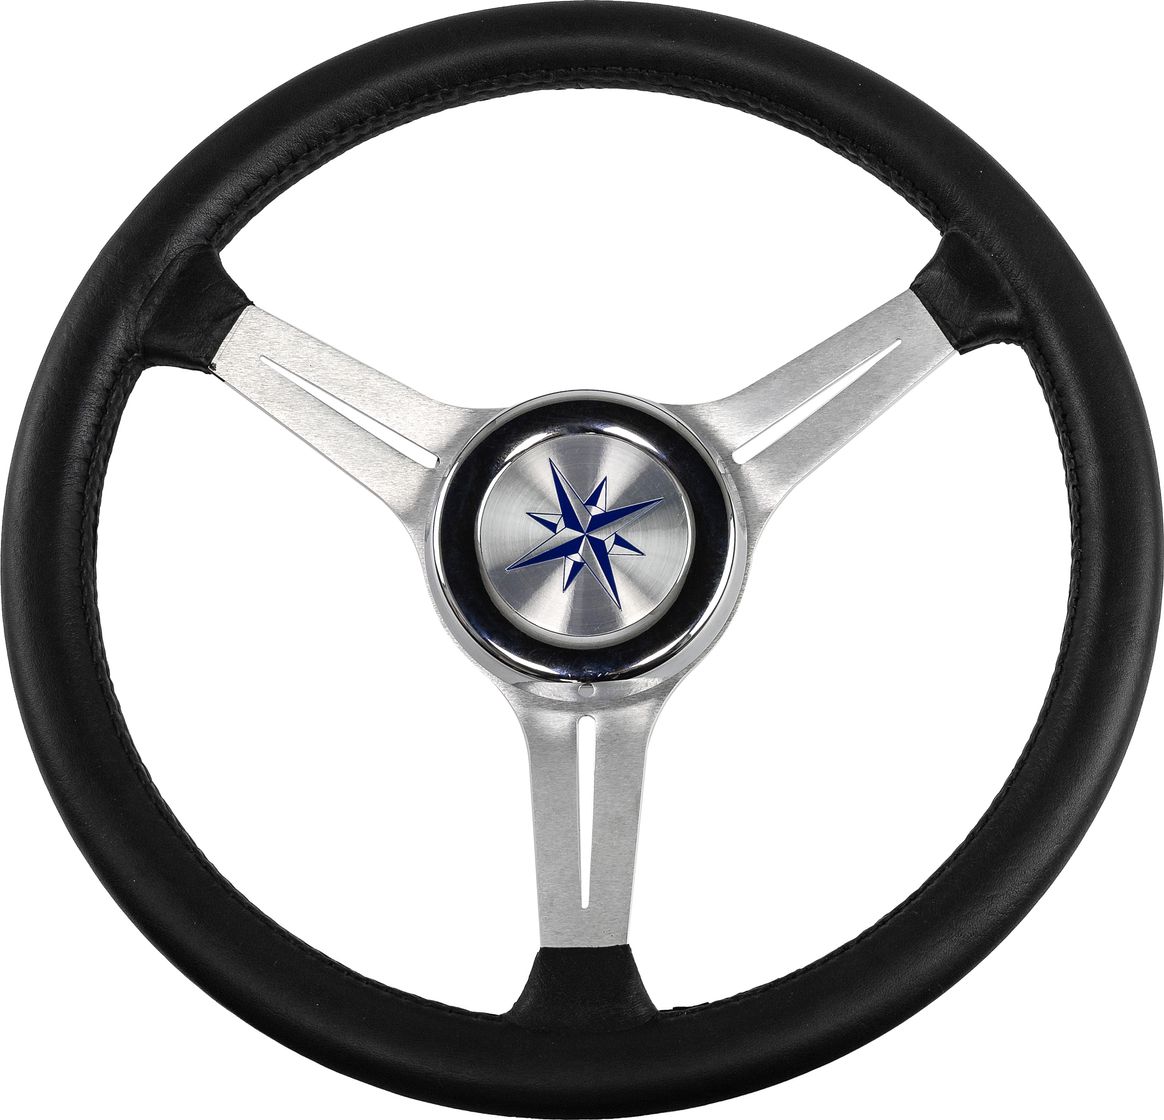 Рулевое колесо LYRA обод черный, спицы серебряные д. 370 мм VN137003-01 рулевое колесо tavolara c s tavolara c s